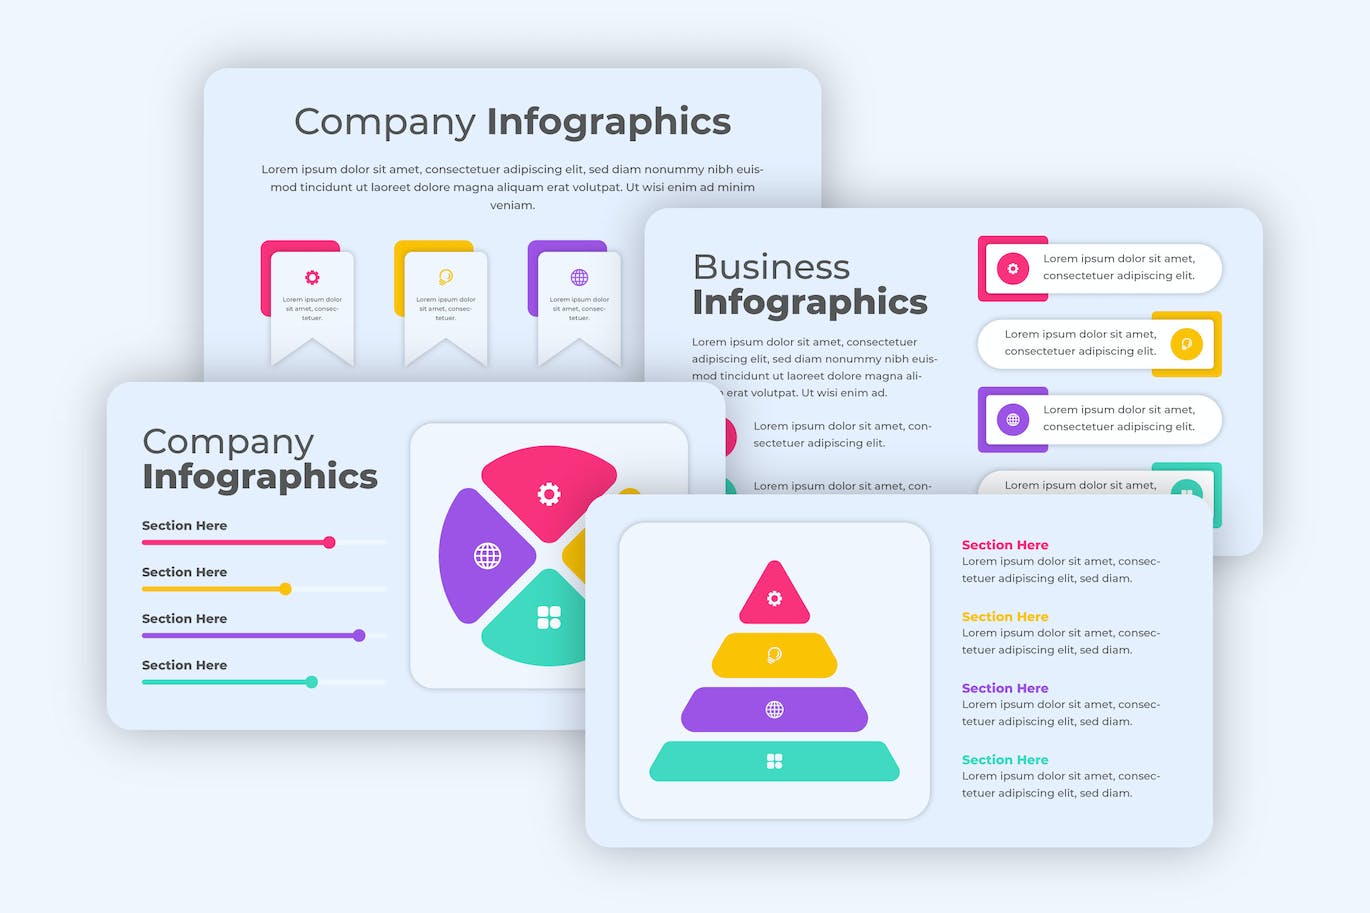 公司业务信息数据图表设计素材 Business Infographics 幻灯图表 第1张